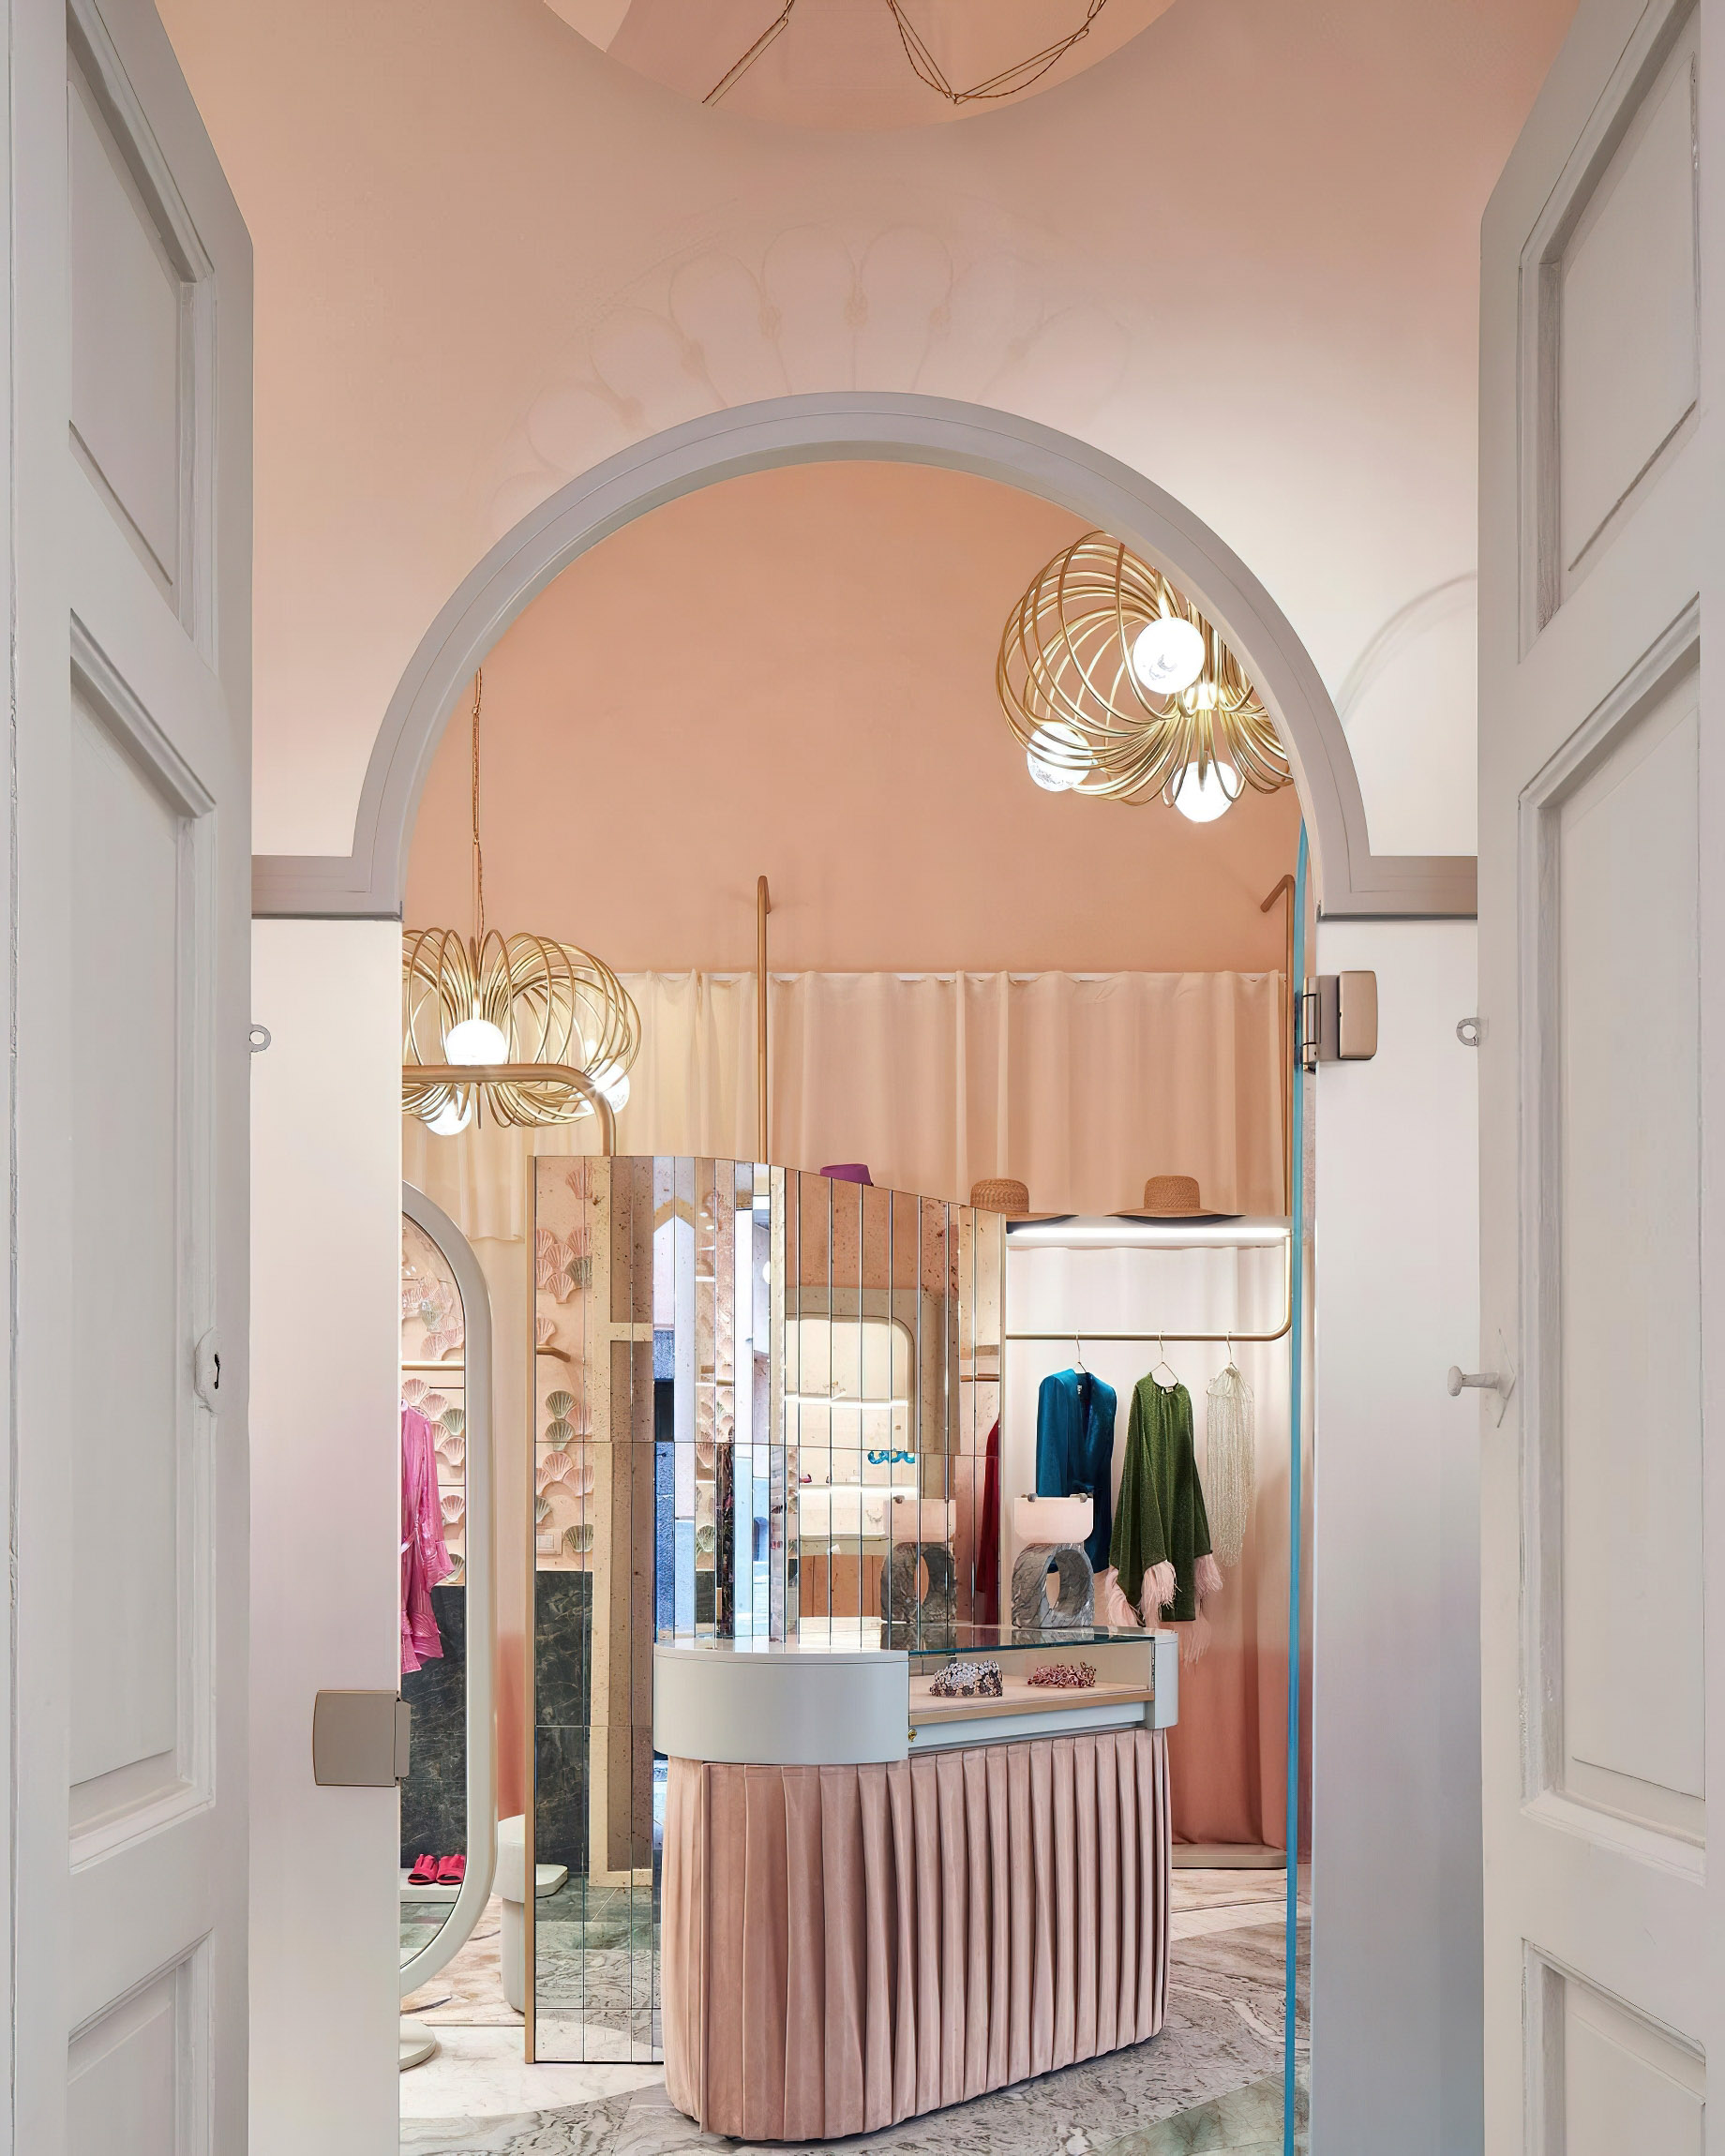 Palazzo Avino Hotel – Amalfi Coast, Ravello, Italy – The Pink Closet